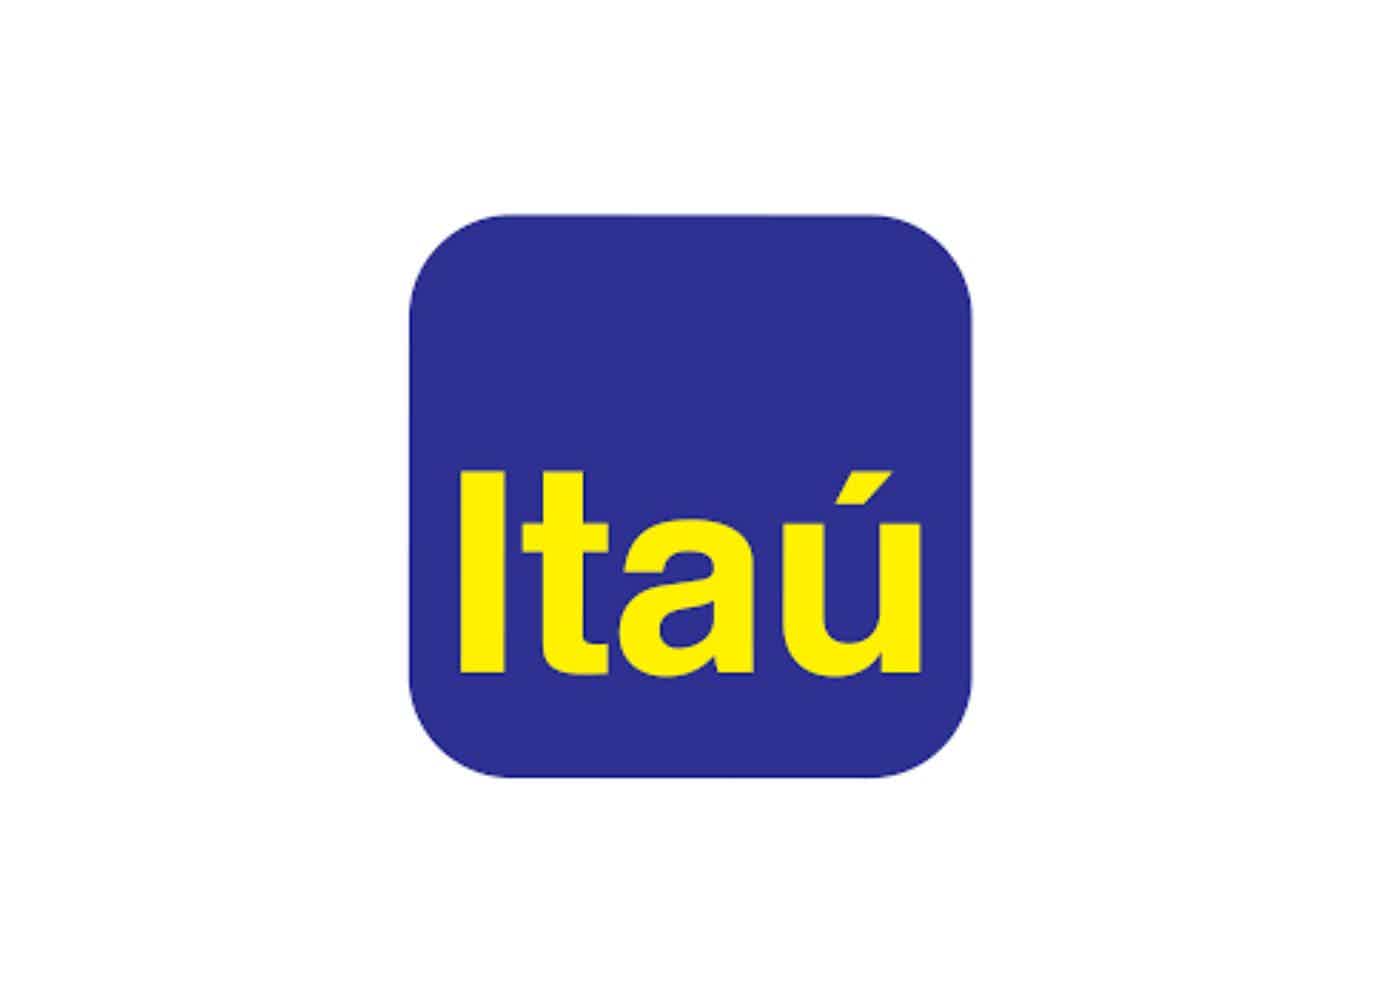 Imagem com fundo braco destacando um quadrado azul com as bordas arredondados escrito "Itaú" no centro